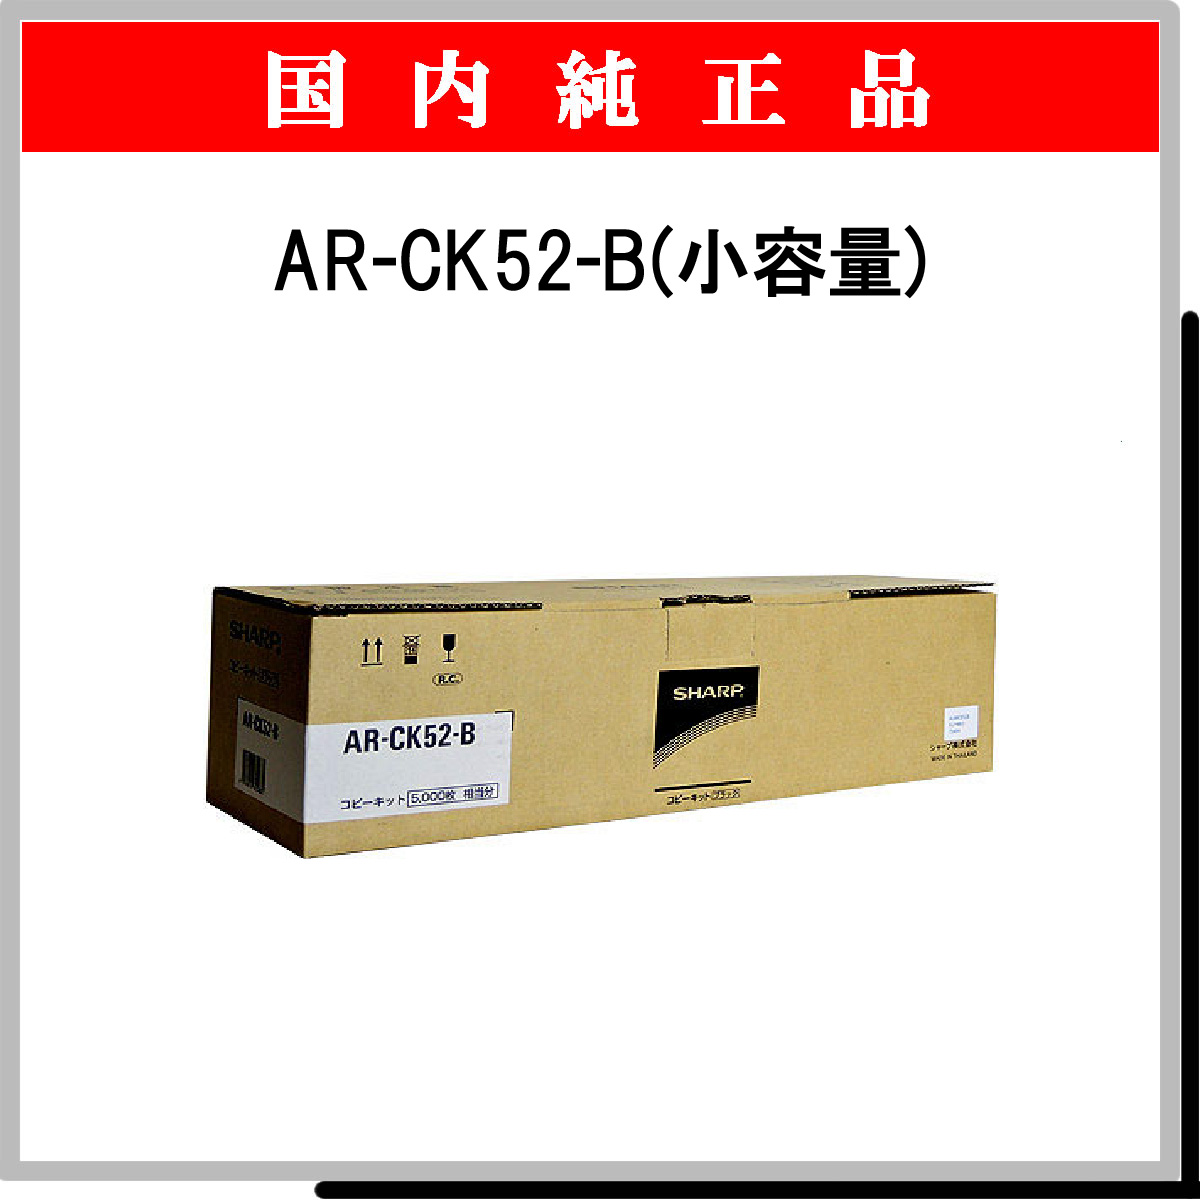 AR-CK52-B 純正 (小容量)